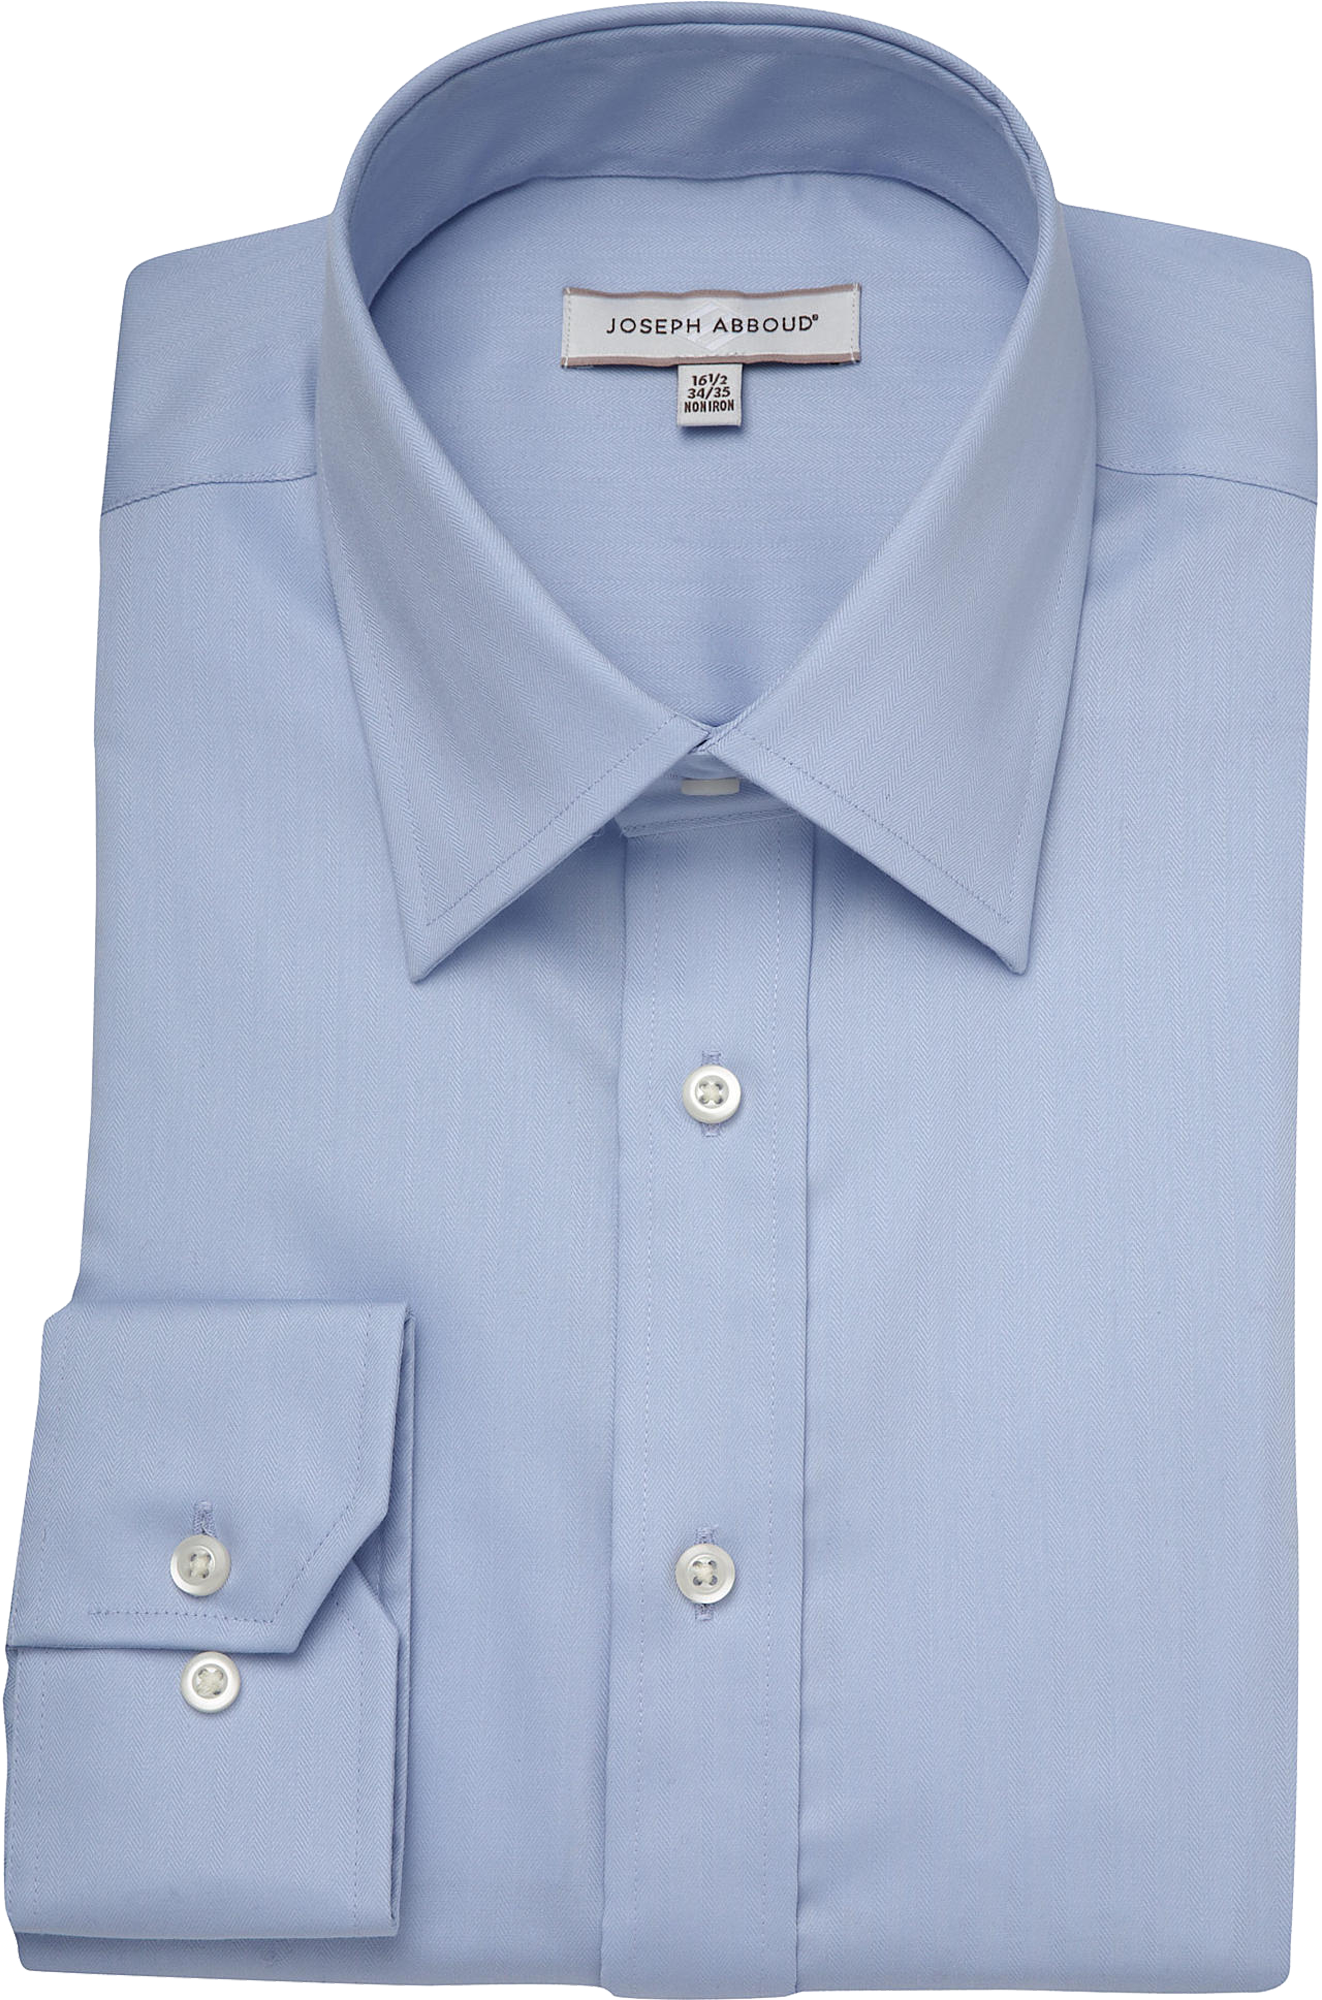 Joseph Abboud Blue Classic Fit Non-Iron Dress Shirt - Men's Sale | Men ...